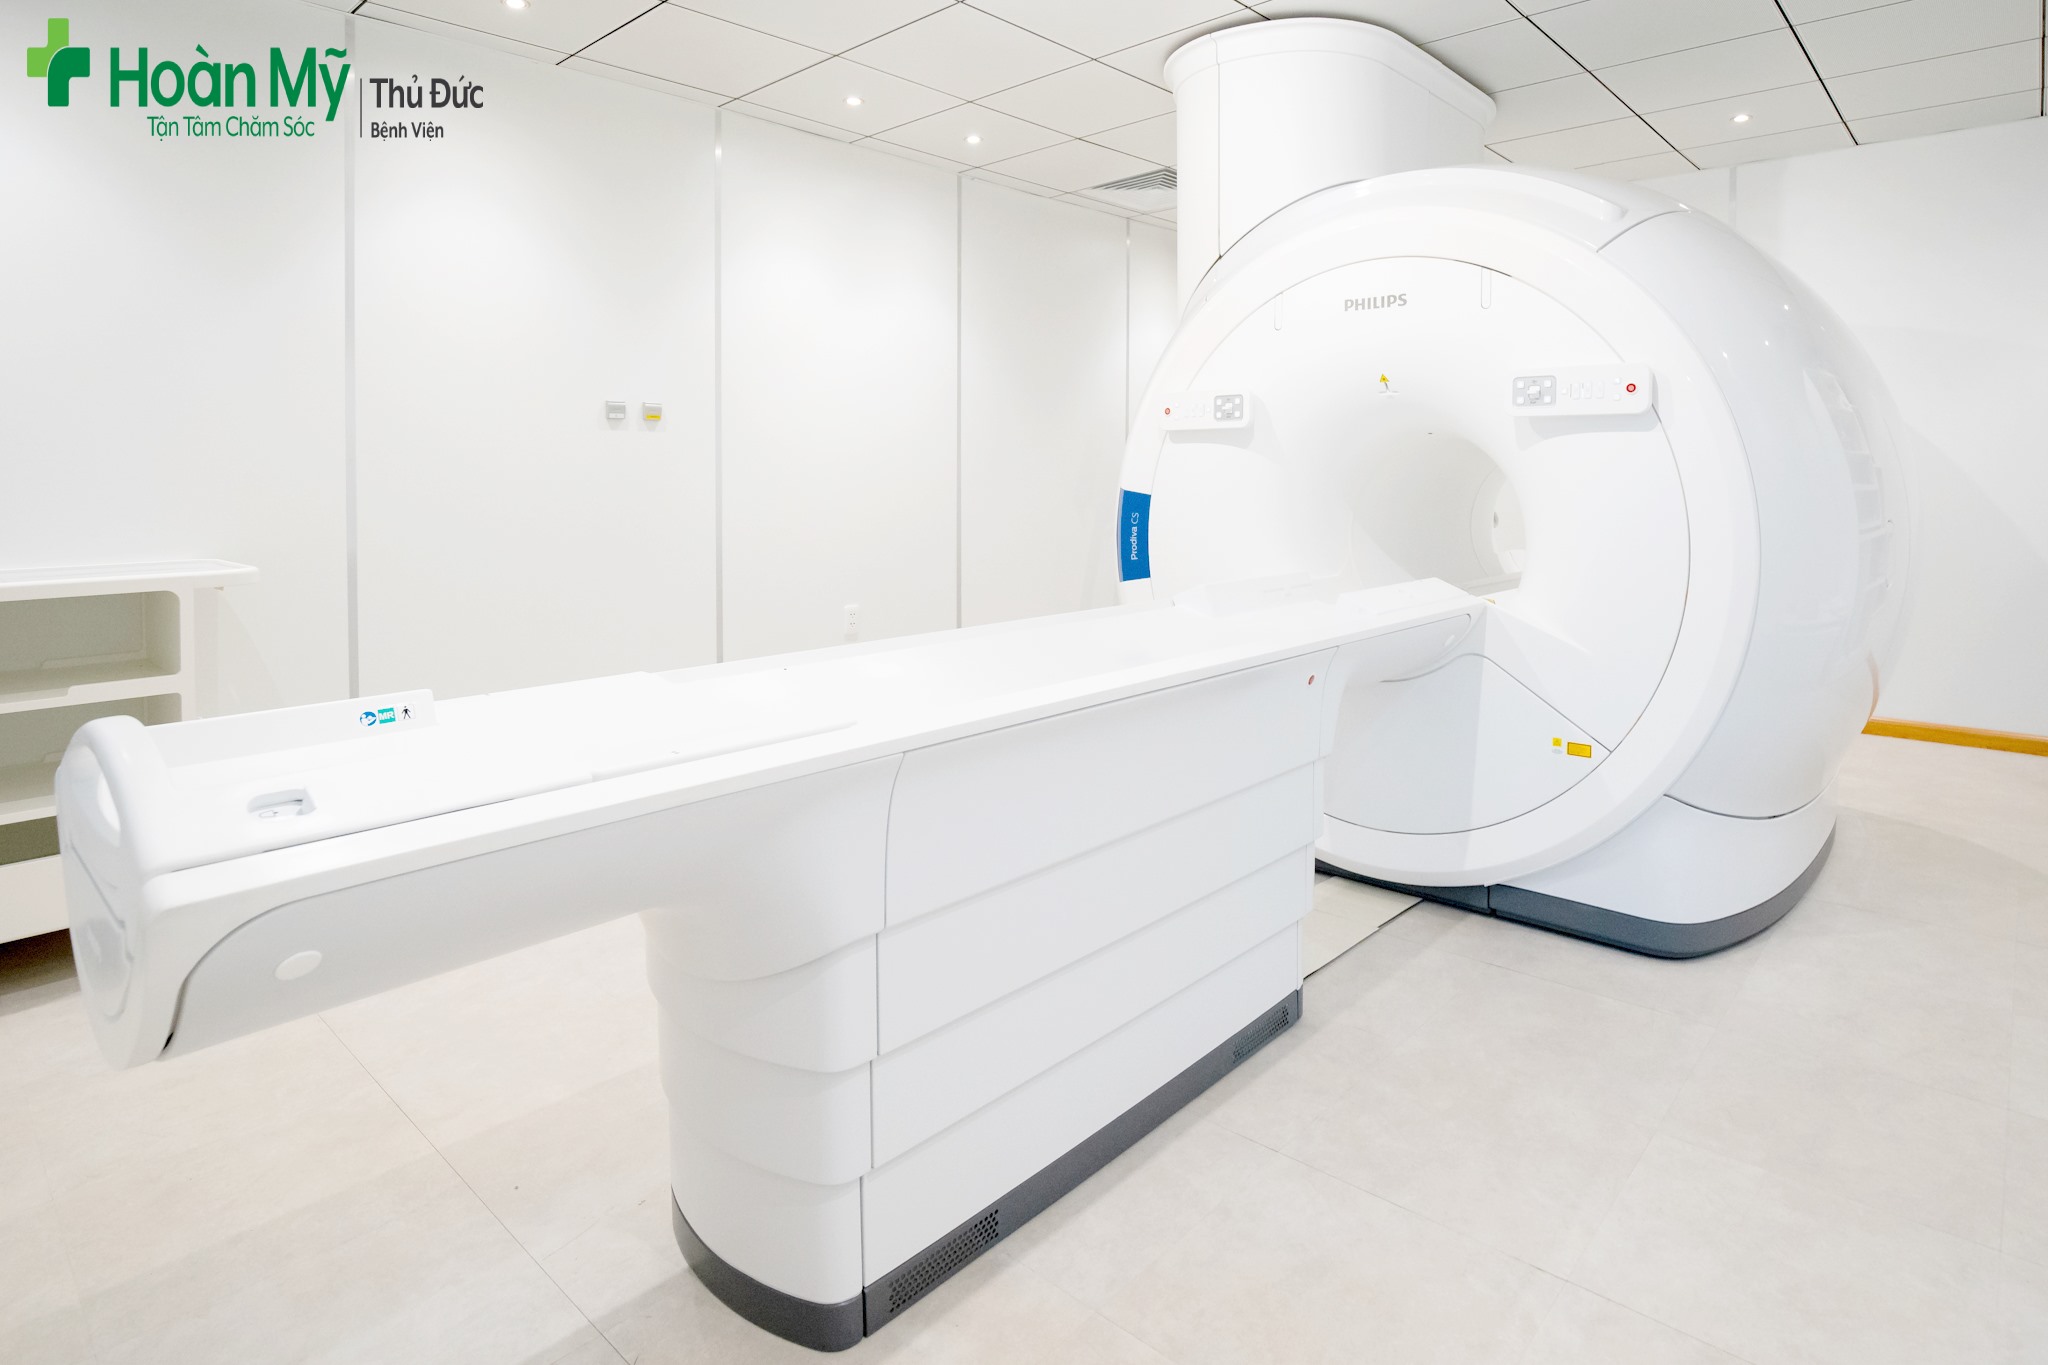 Bệnh viện Ung bướu Bắc Giang mua hệ thống chụp cộng hưởng từ (MRI) có giá cao hơn nơi khác 7,2 tỷ đồng - ảnh 2